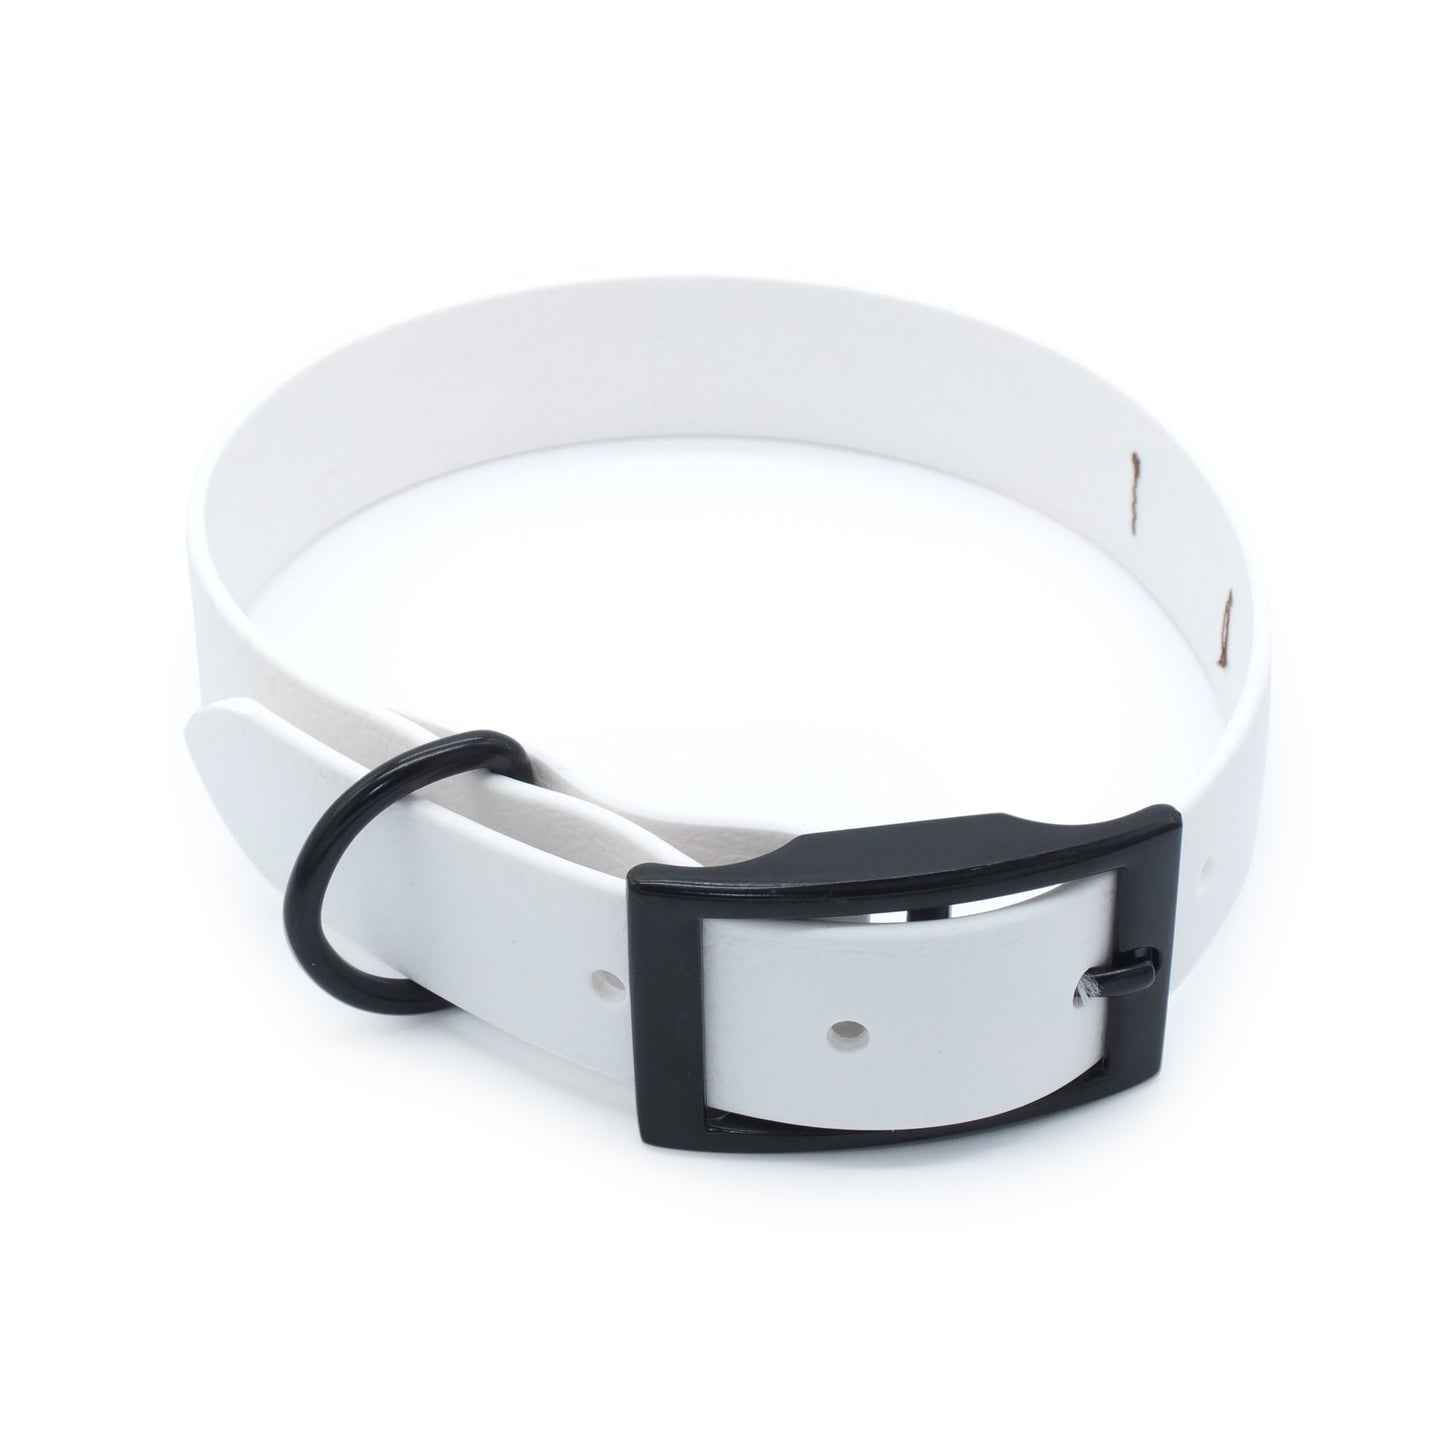 Furfellows Biothane Hundehalsband in weiß mit schwarzer Schnalle. Handgemachte Hundeaccessoires, Hundeleinen & Halsbänder für Hunde aus Biothane